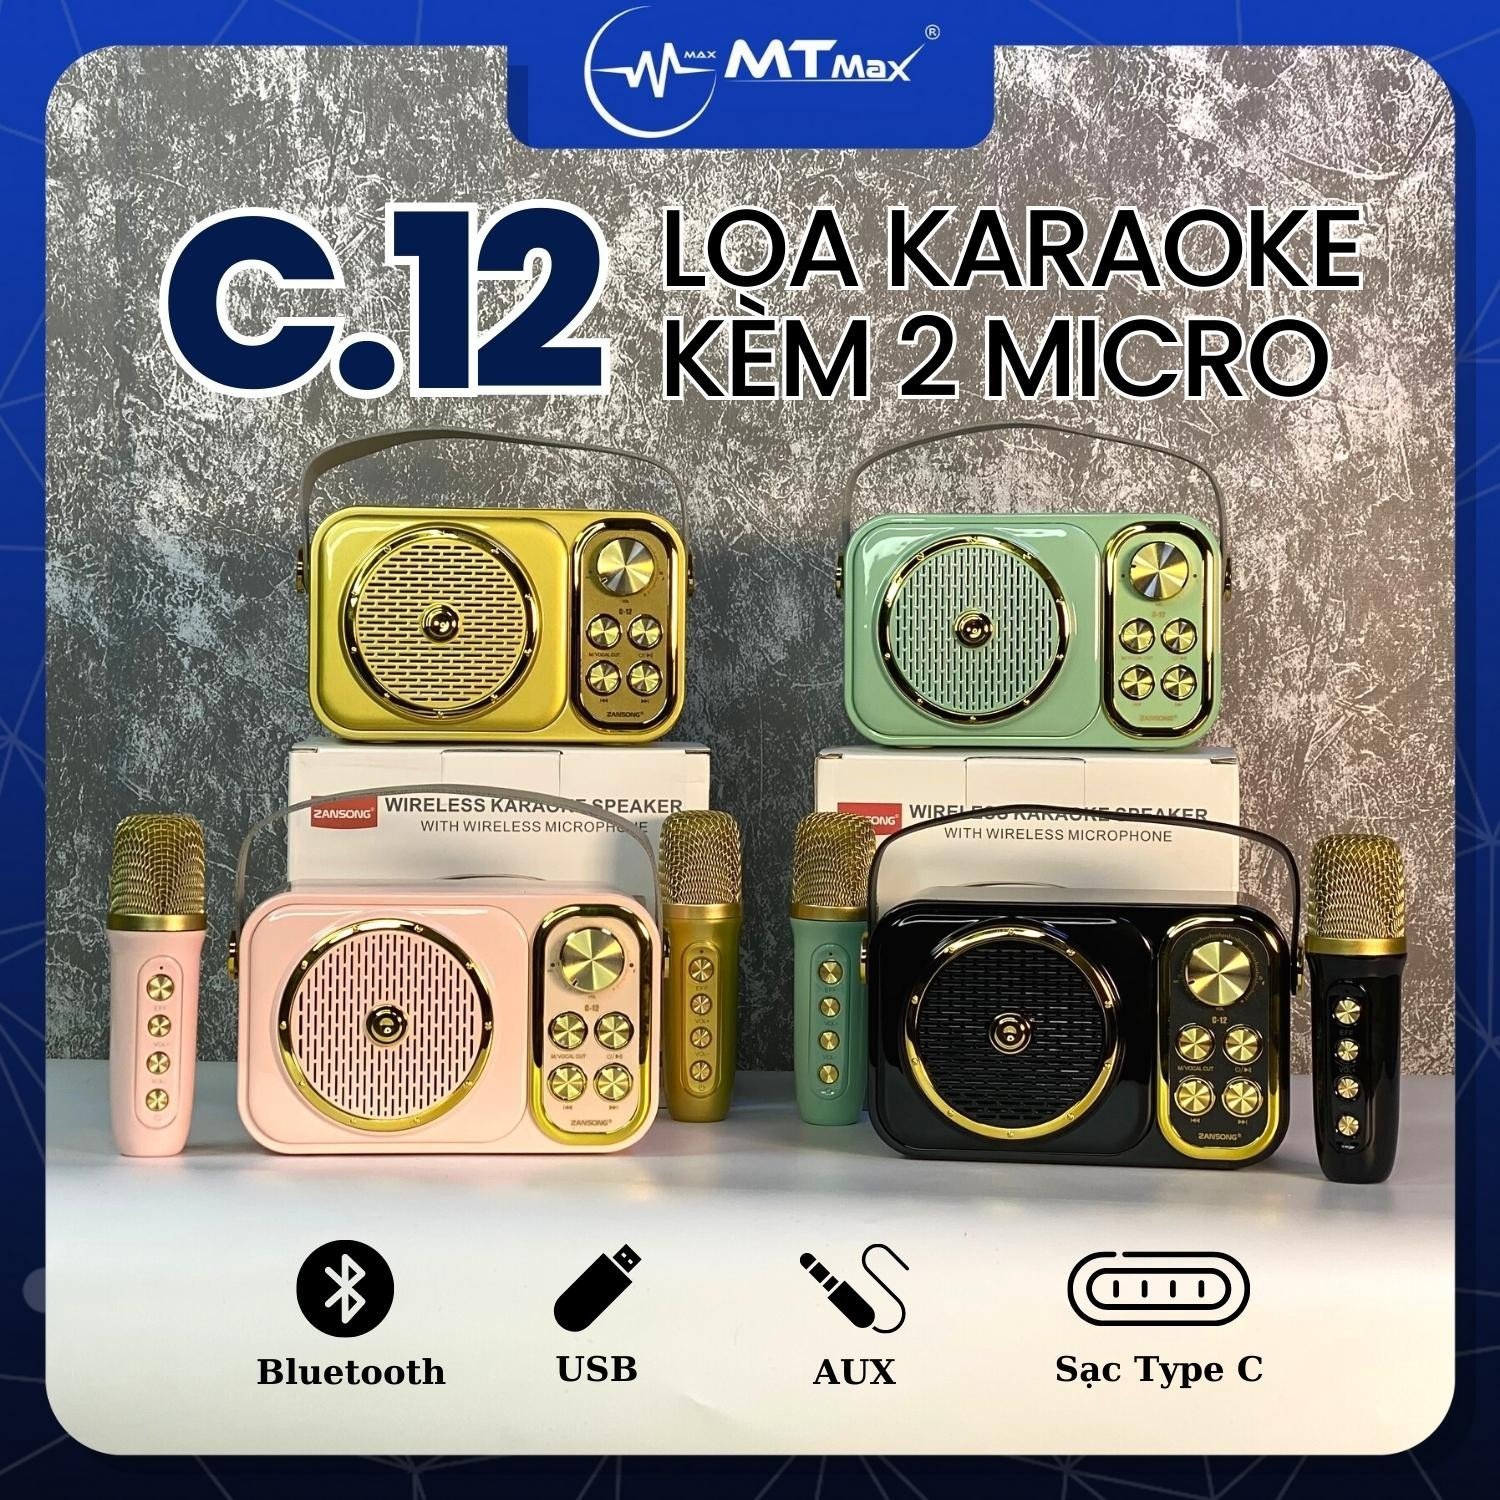 Loa Karaoke Zansong C12 - Kèm 1 Micro Không Dây. Kiểu dáng mini siêu kute, màu sắc bắt mắt. Mặt trước có bộ âm trầm được bảo vệ bởi lưới kim loại. Có cổng kết nối AUX, USB, thẻ TF và tích hợp Bluetooth 5.0